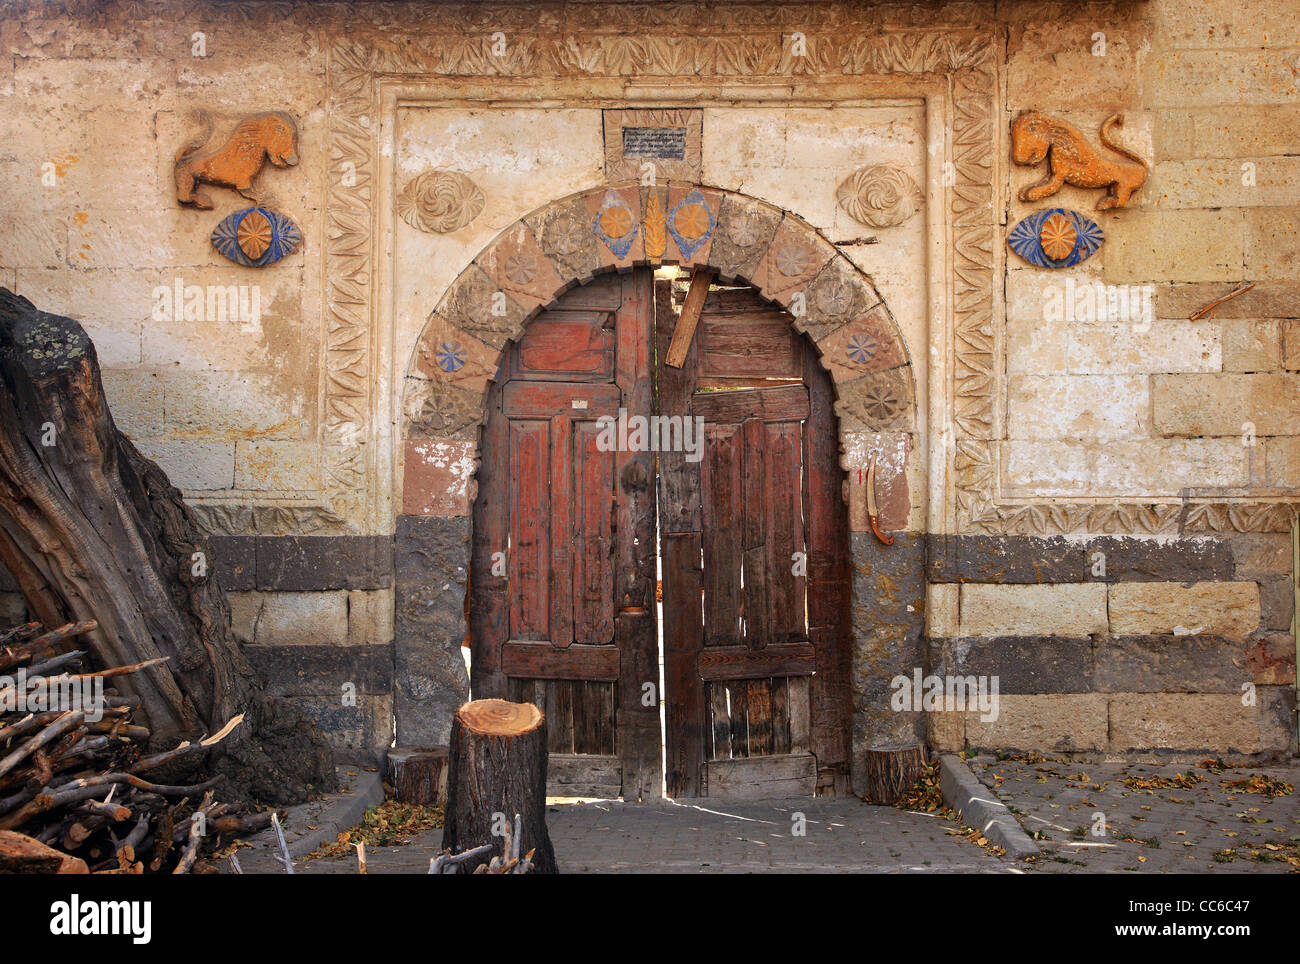 Eine schöne alte Tür von einem alten griechischen Haus in Sinasos Dorf (heute genannt "Mustafapasa"), Nevsehir, Kappadokien, Türkei. Stockfoto